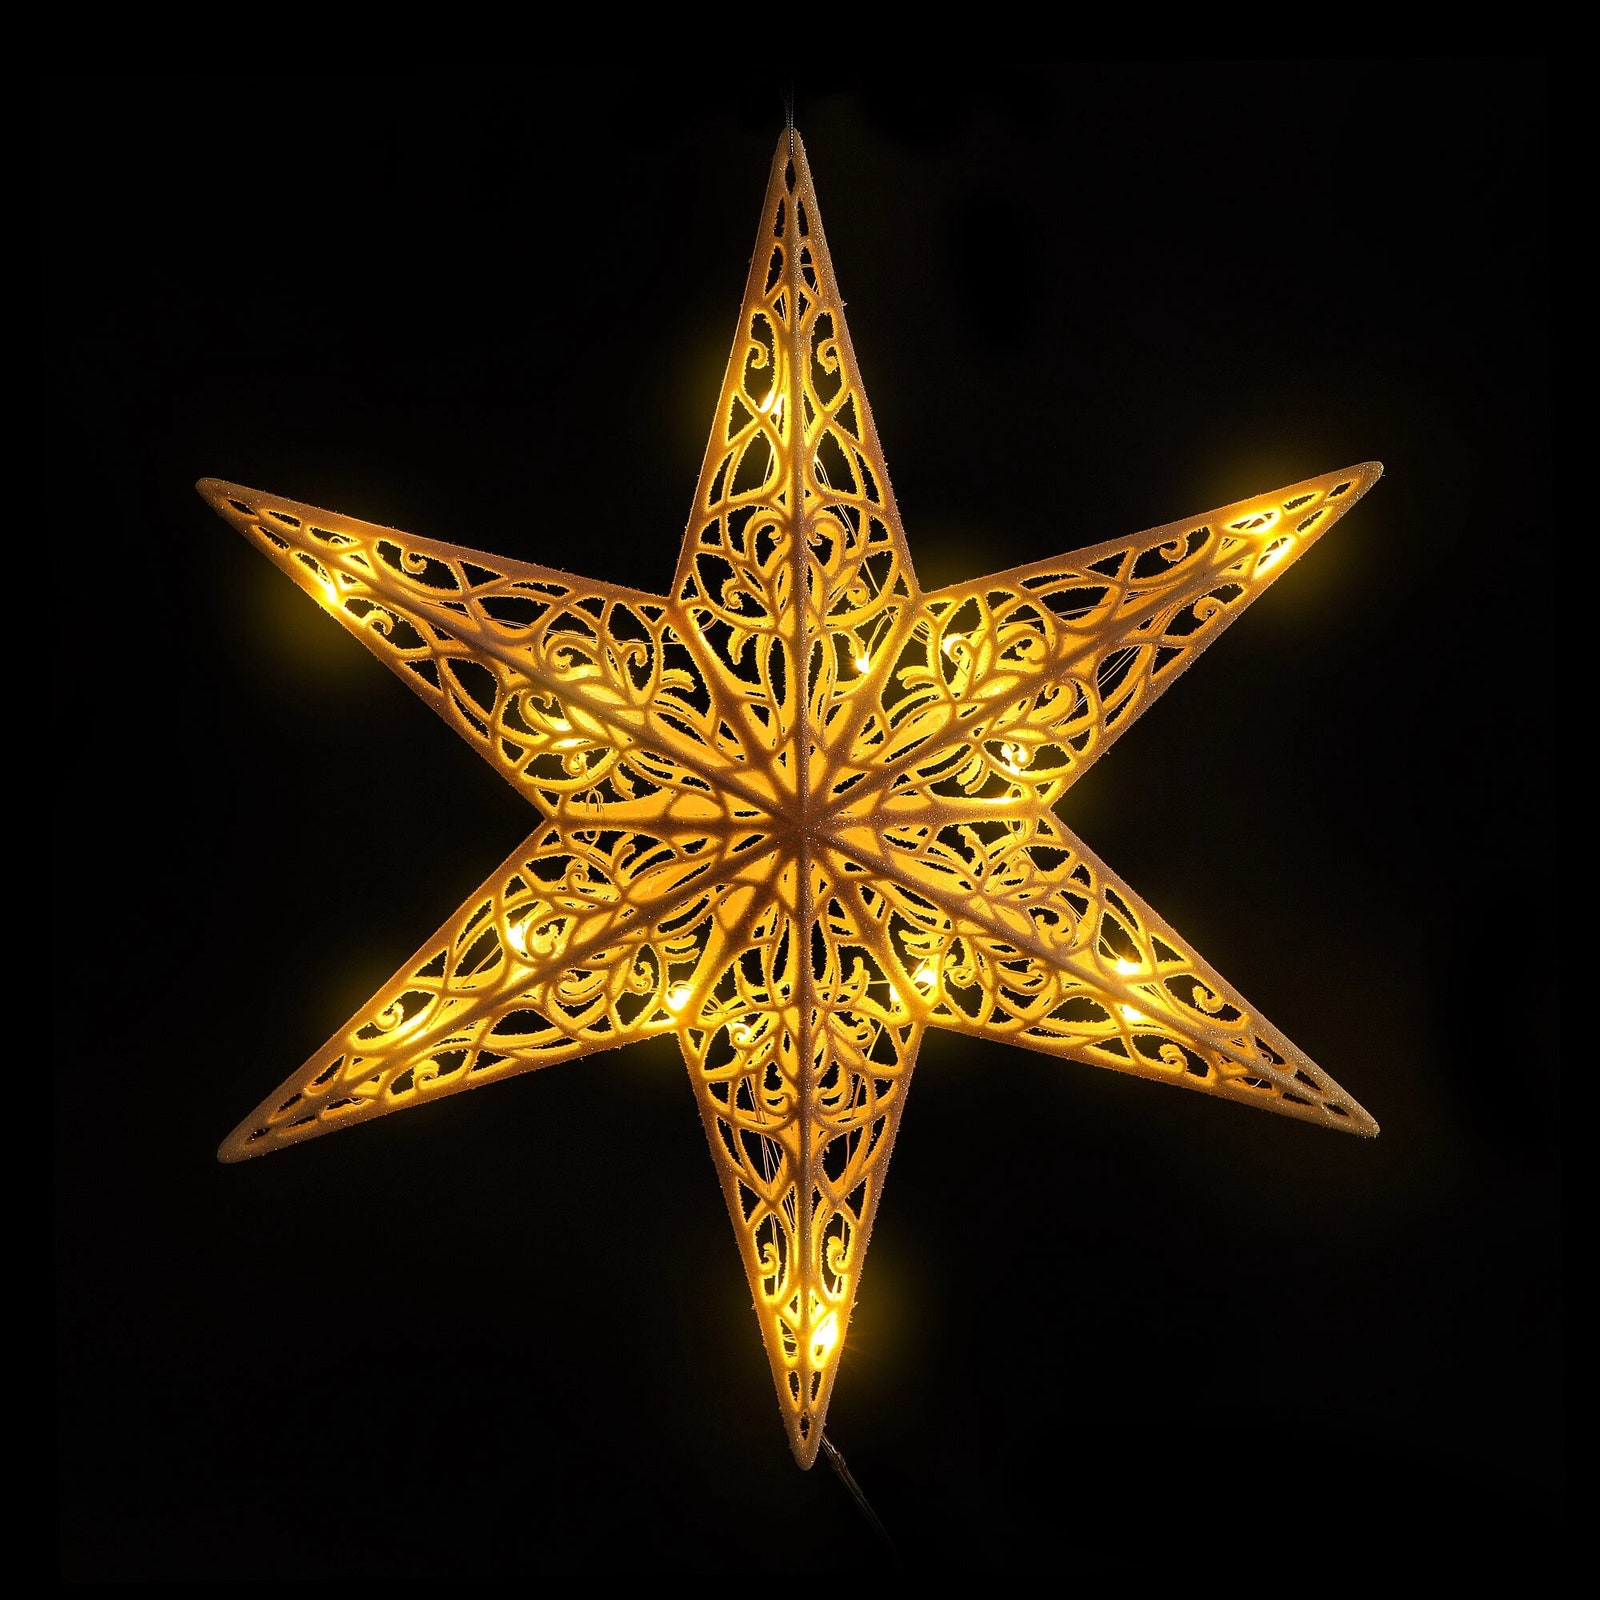 Звезда новогодняя с подсветкой 350 мм 1659 руб.